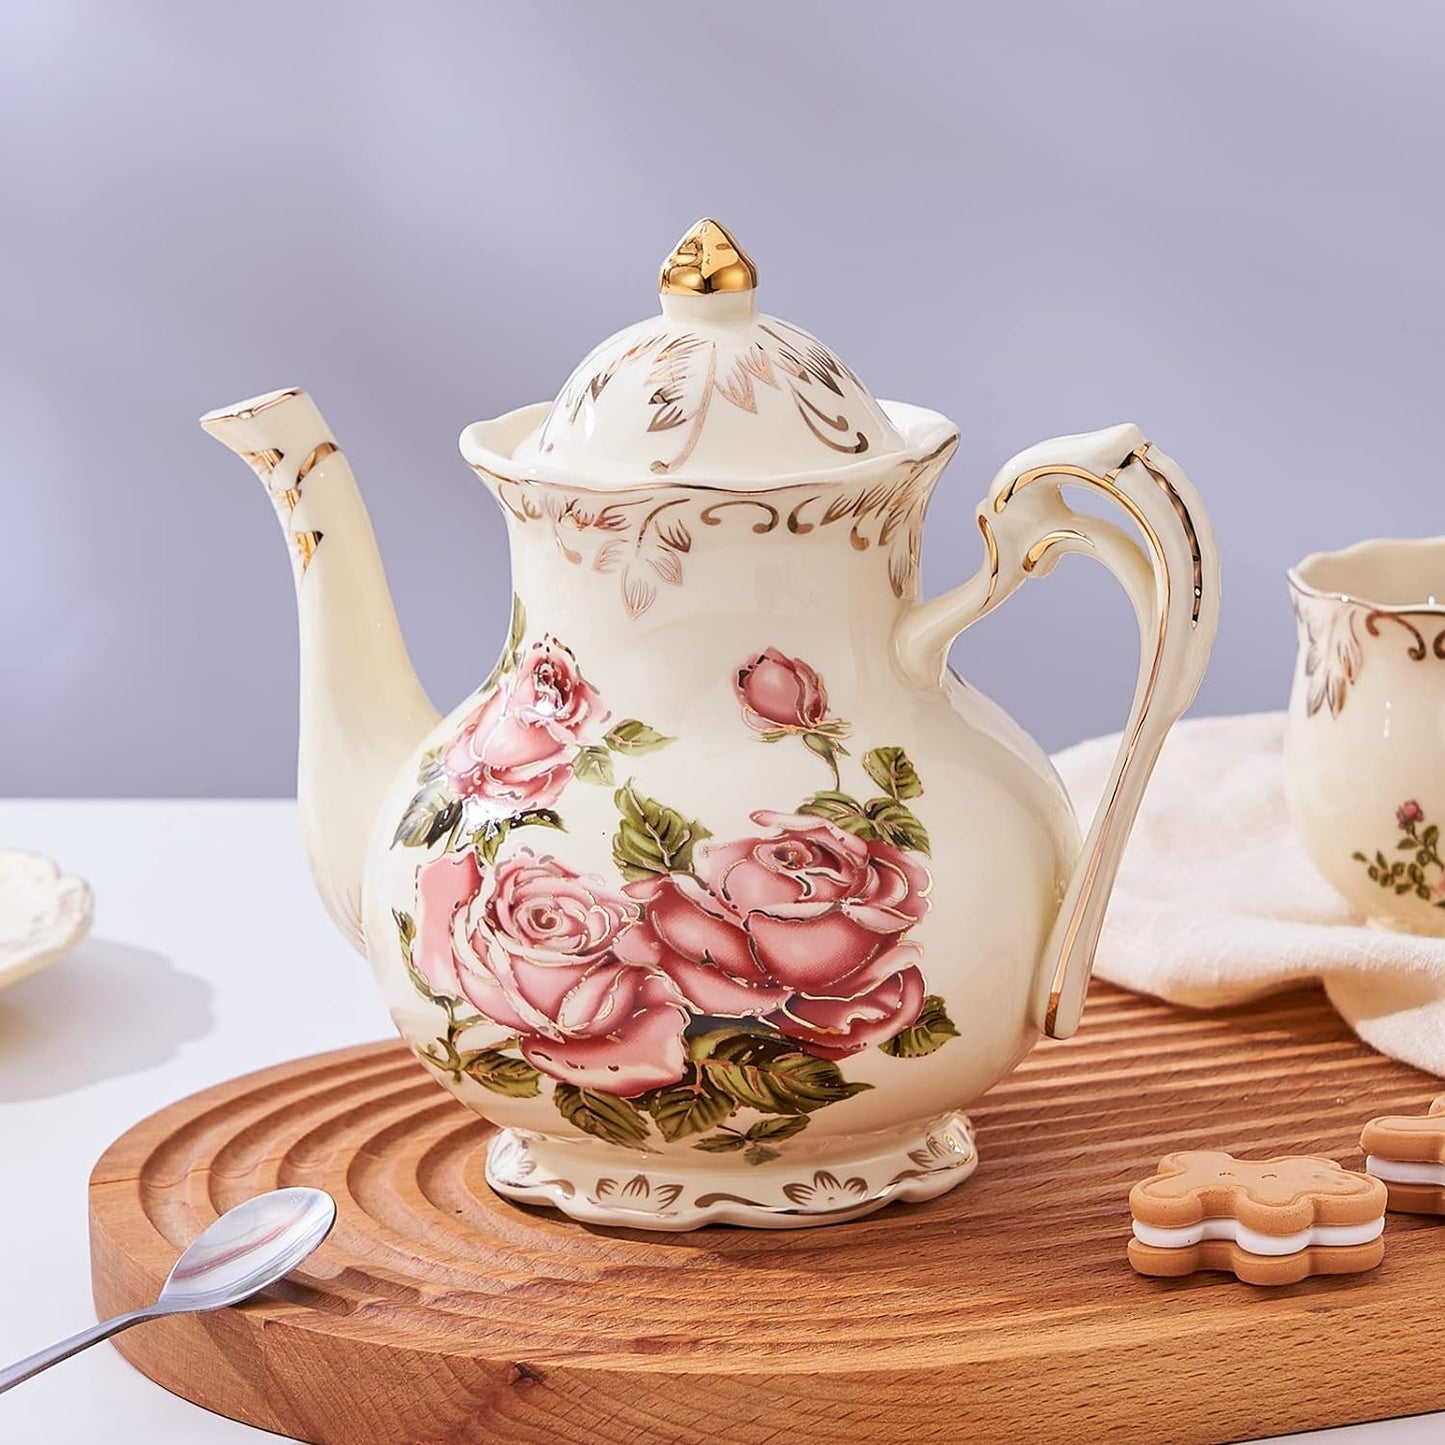 Pink Rose Ceramic Tea Pot, Ivory Vintage Floral Teapot 29oz